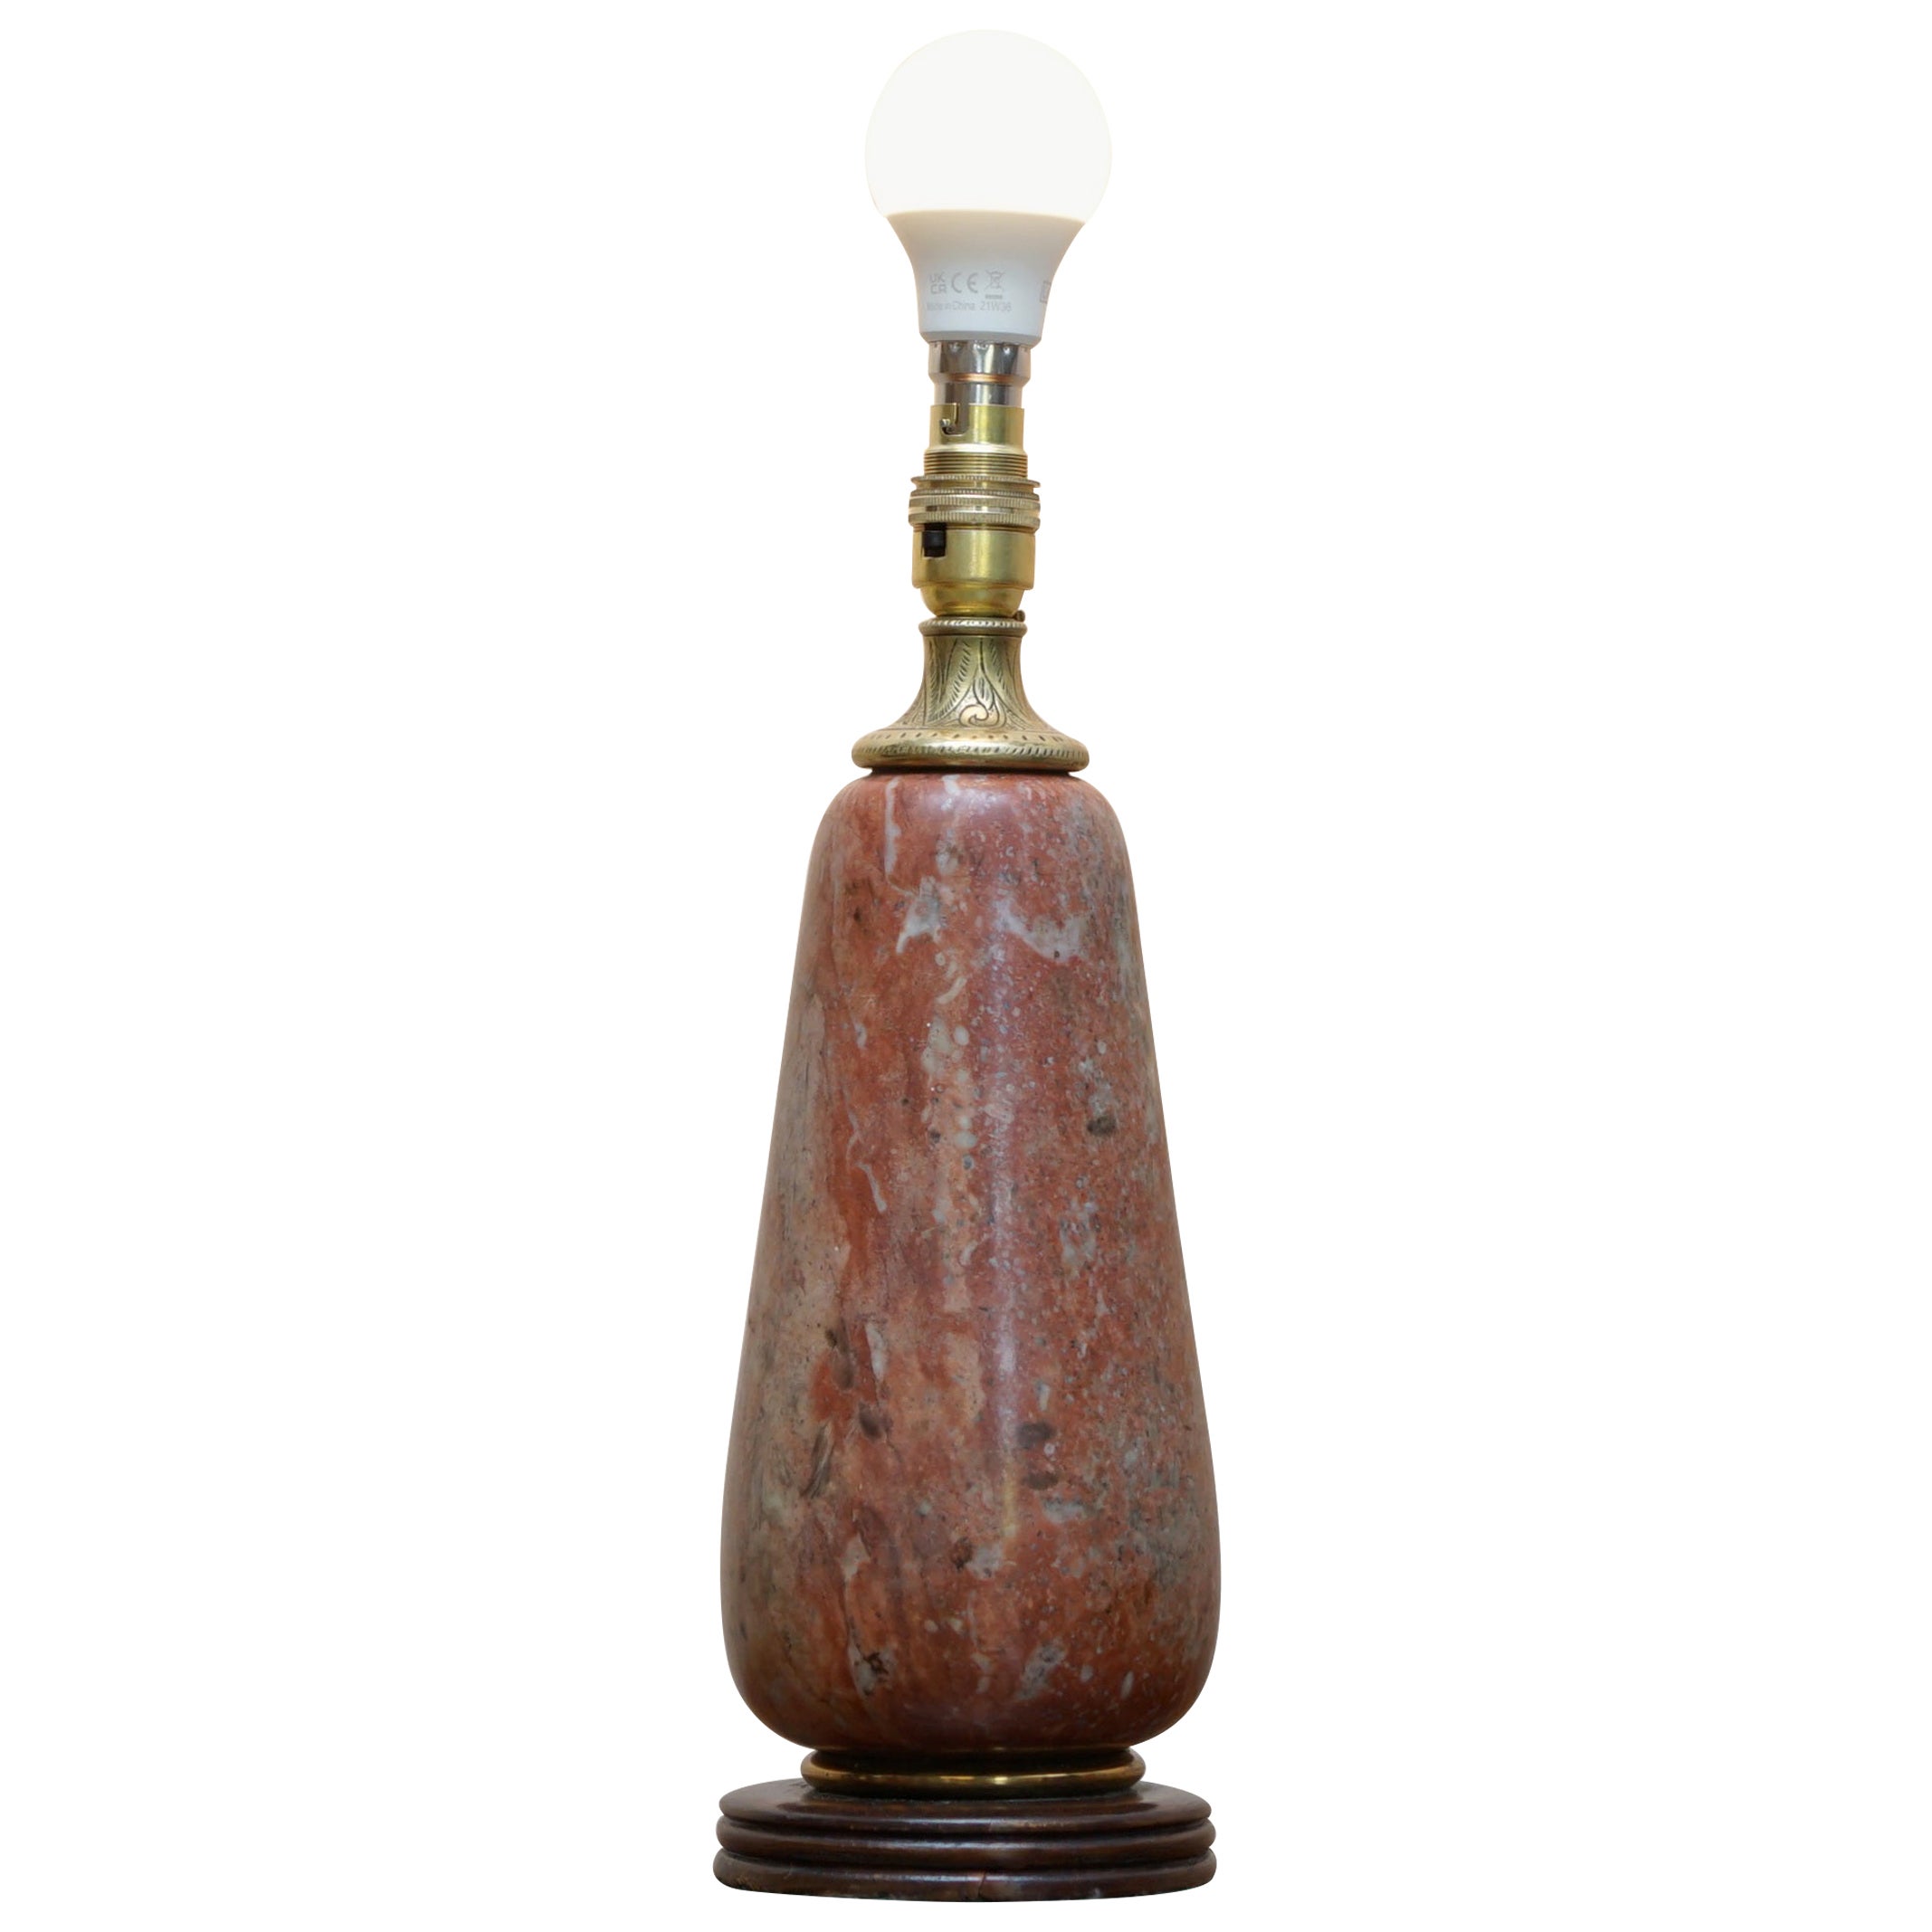 Jolie forme de lampe de bureau française ancienne en laiton doré et marbre de la fin de l'époque victorienne